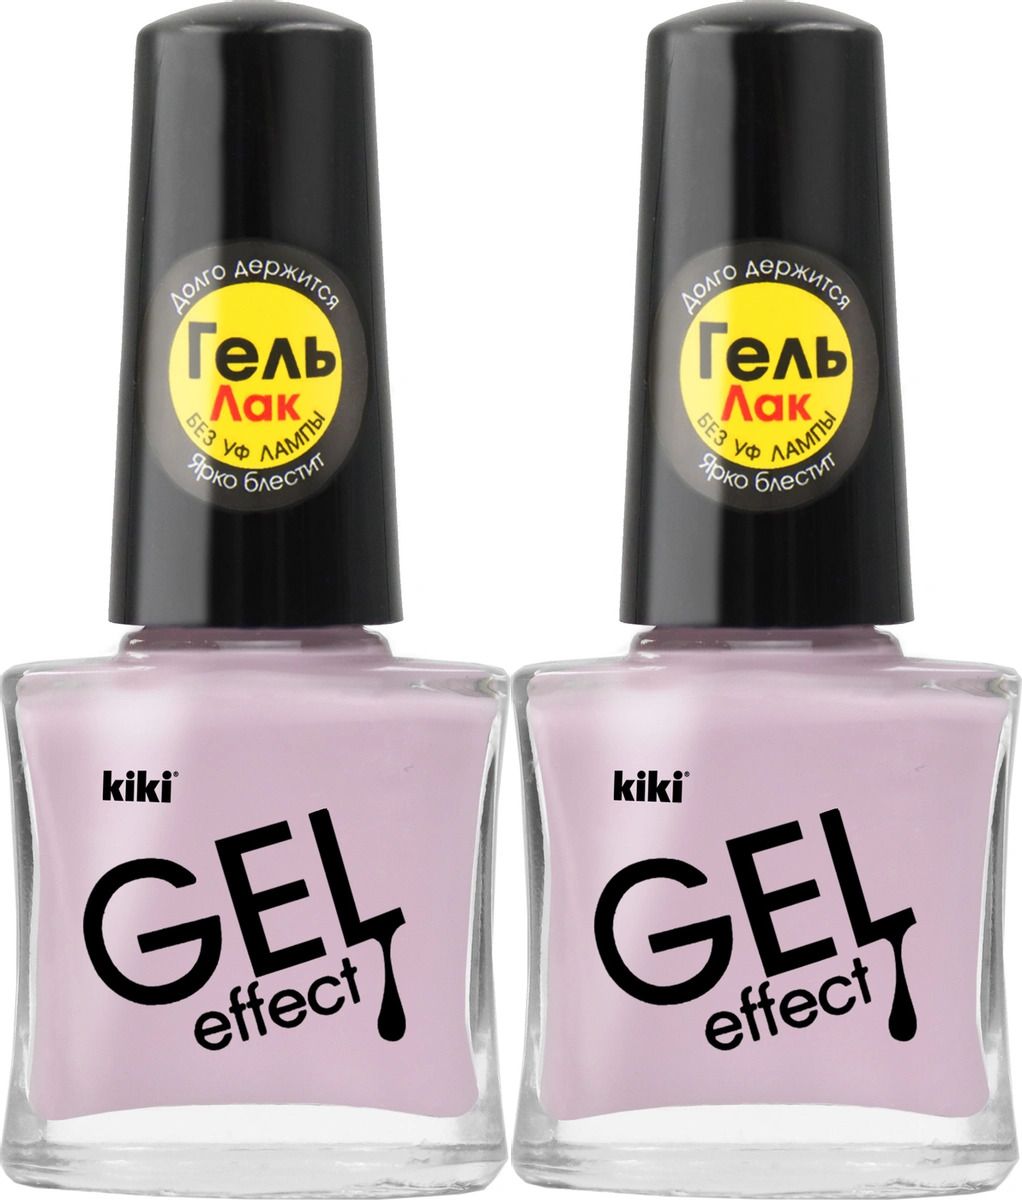 Лак для ногтей Kiki Гель эффект 080 Бледно-розовый, 2 шт косметичка на молнии бледно розовый